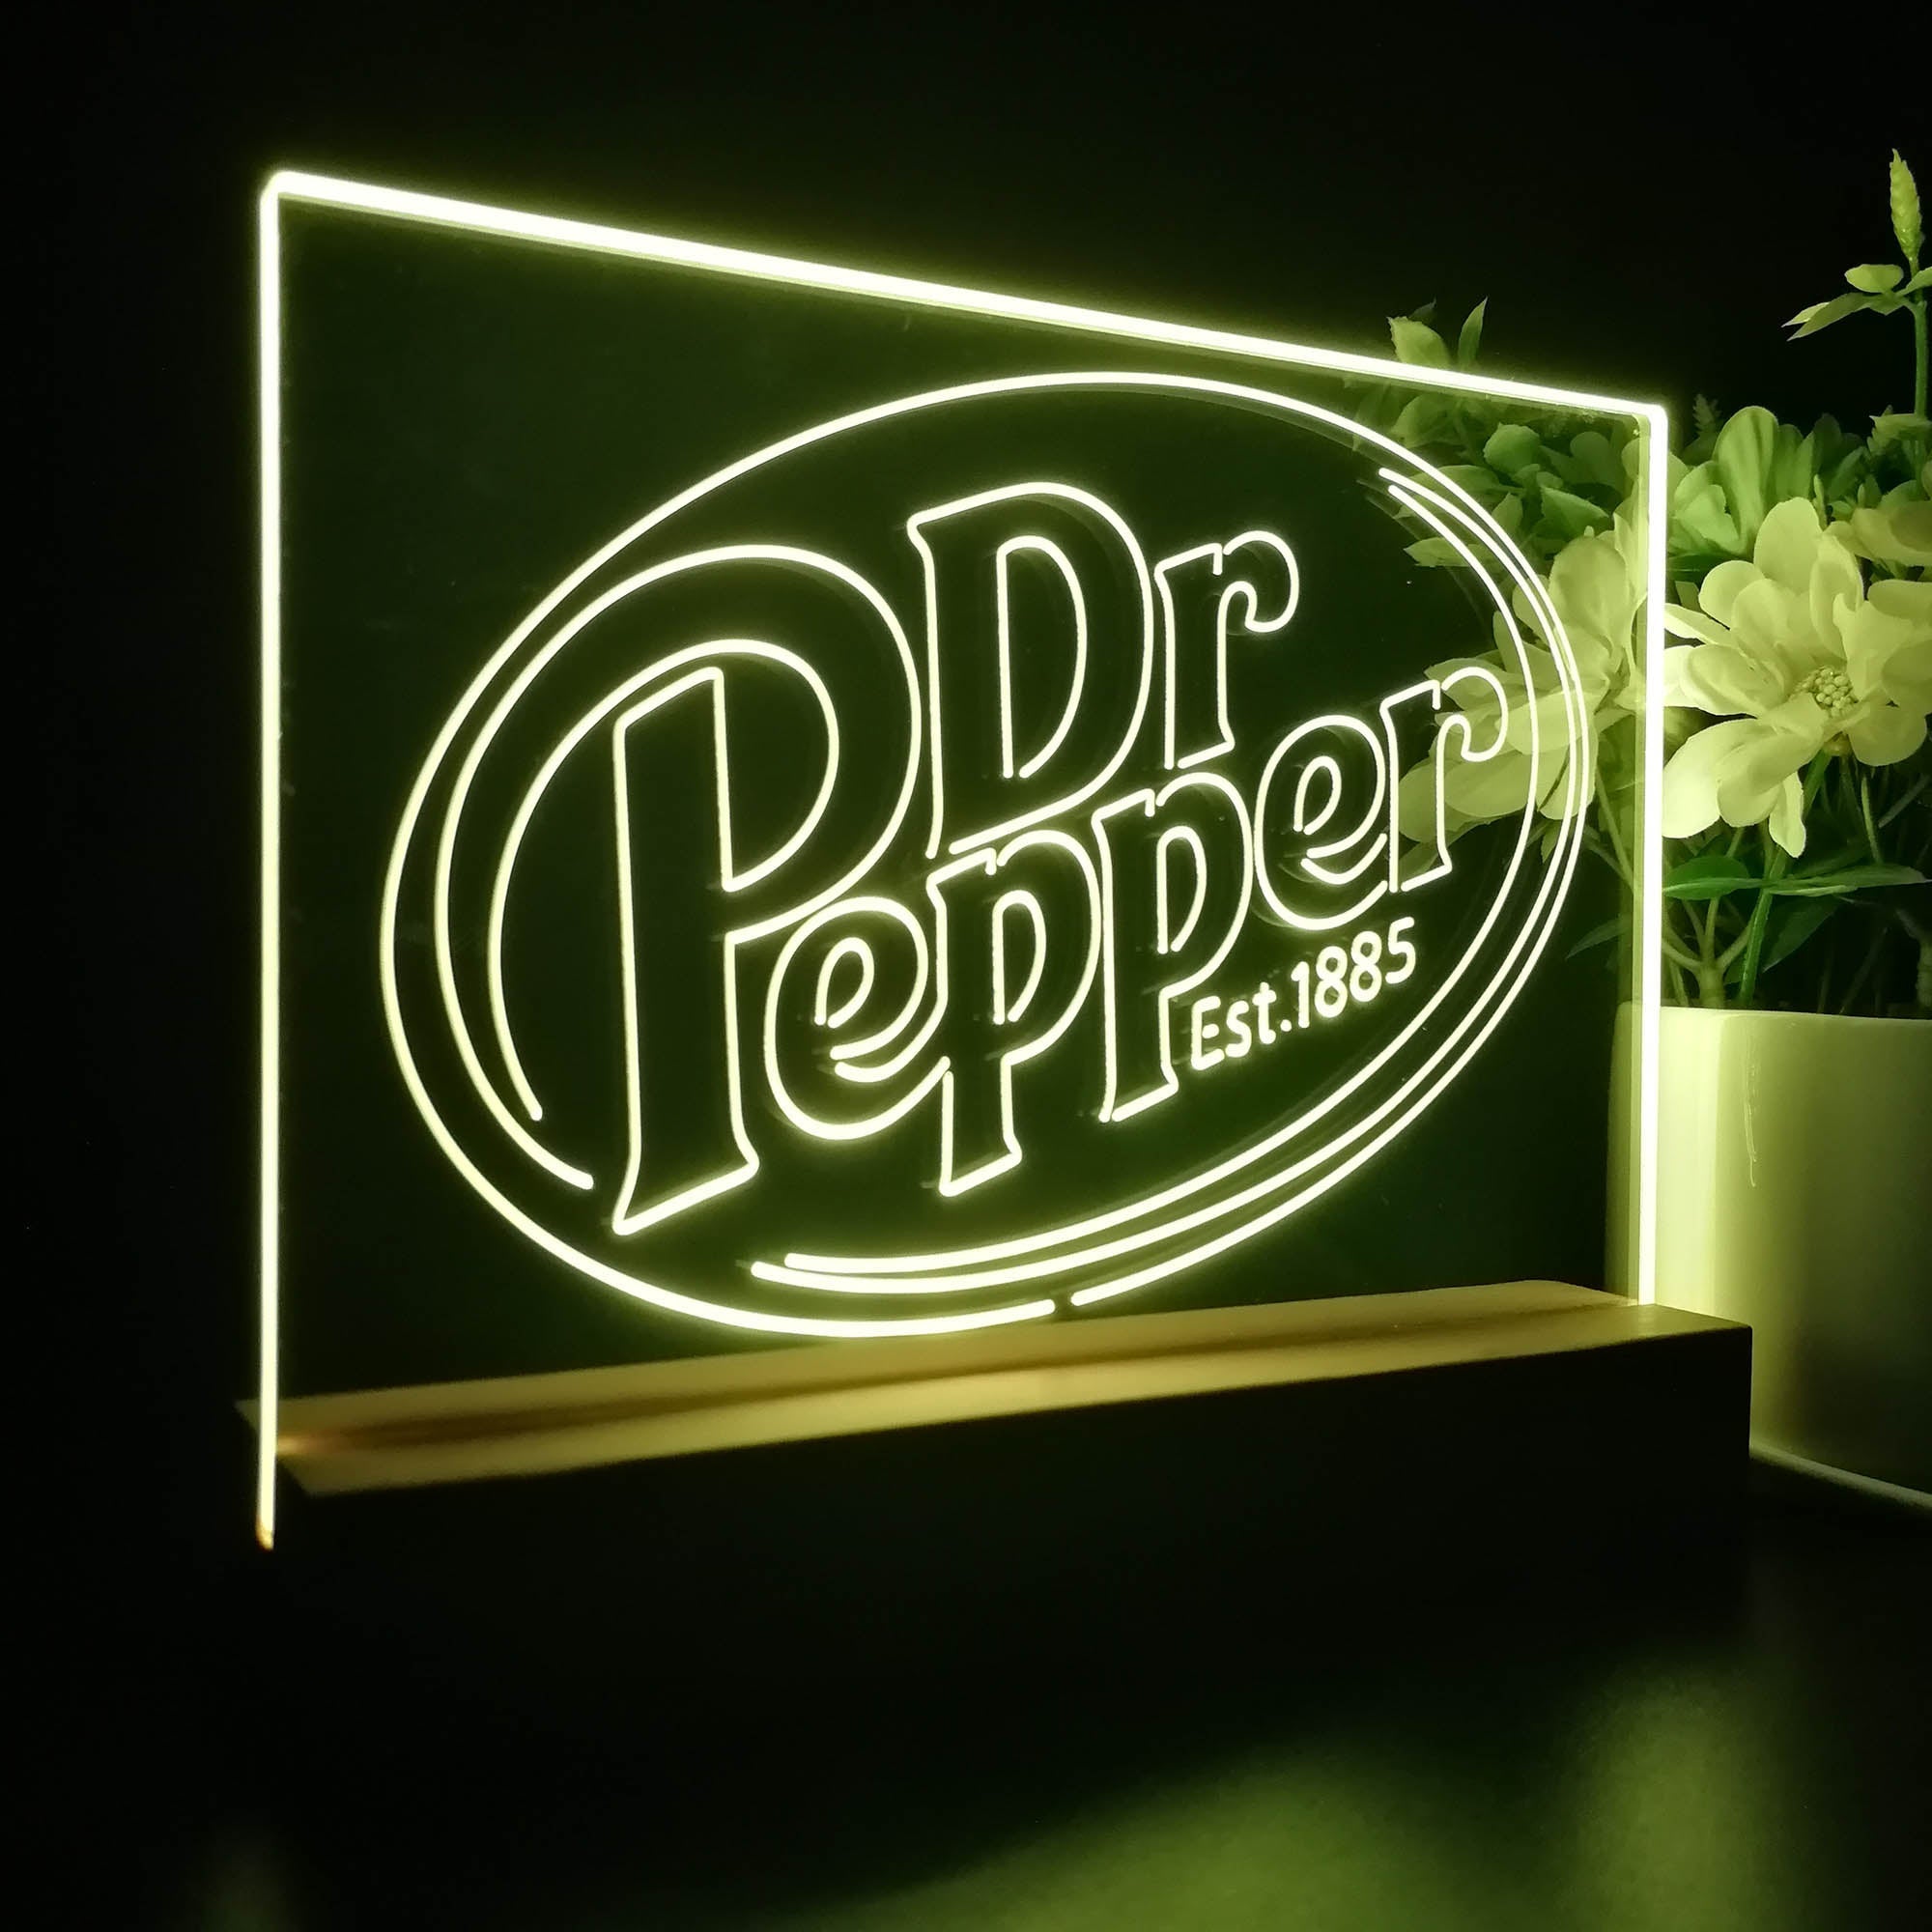 Dr Pepper Est 1885 Neon Sign Pub Bar Decor Lamp